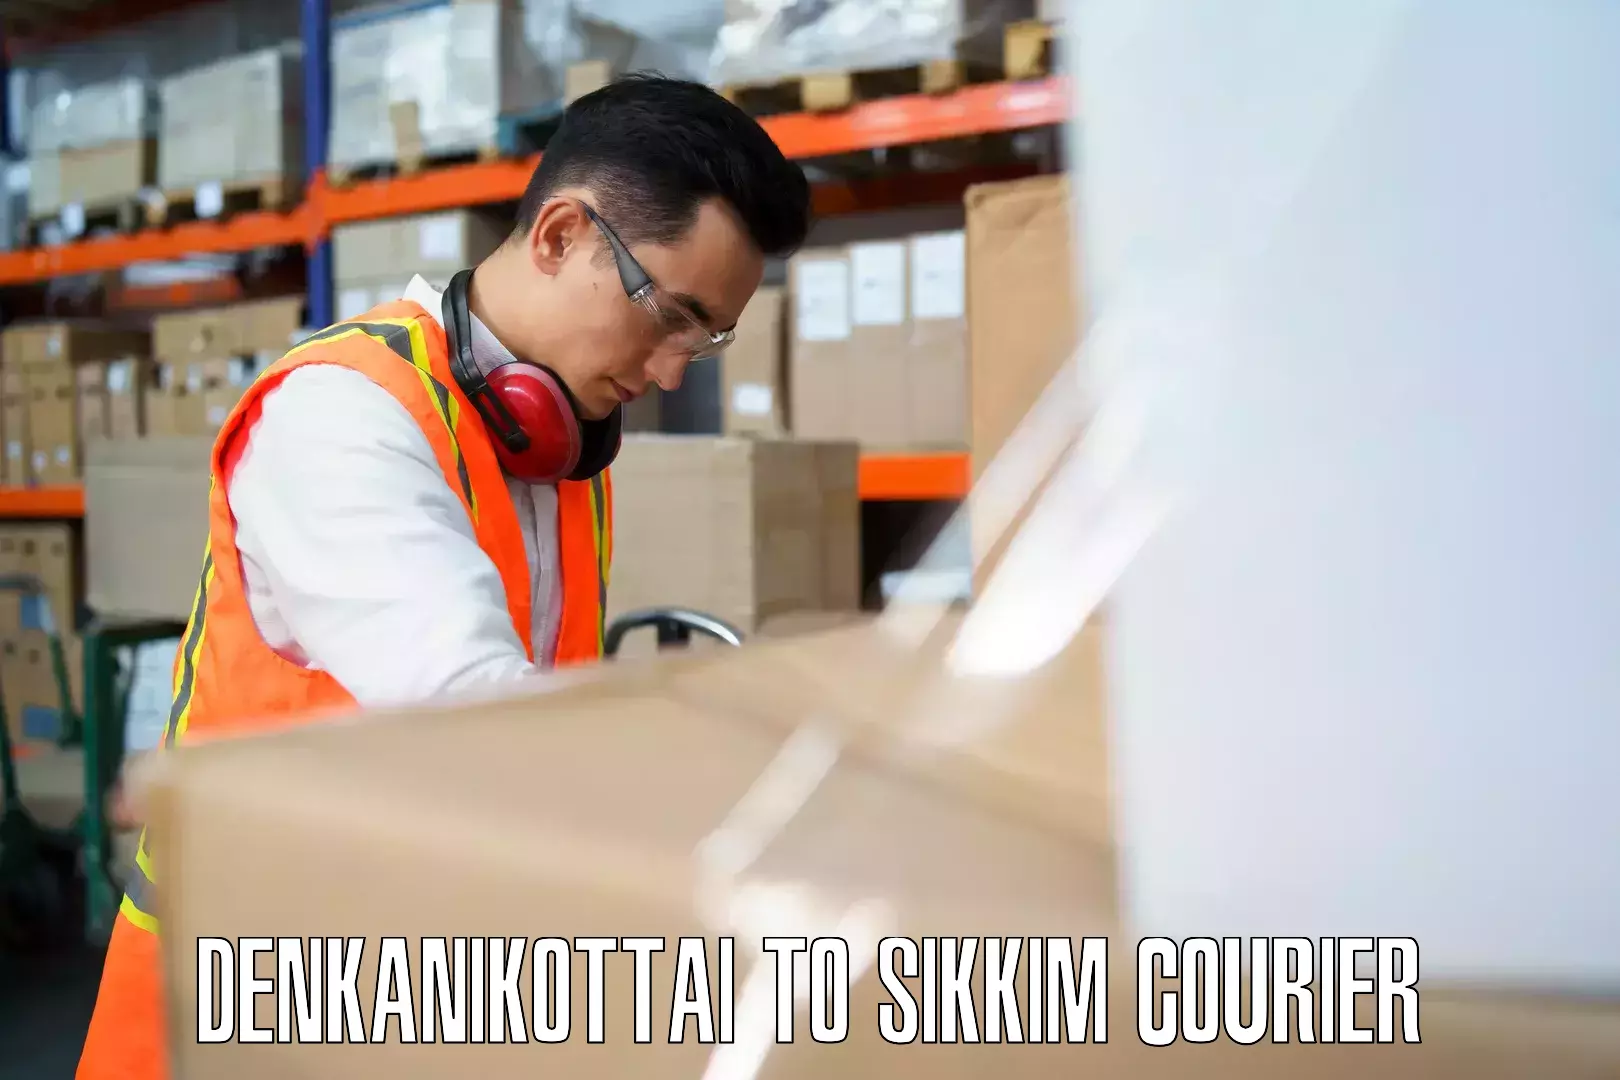 Luggage delivery app Denkanikottai to East Sikkim